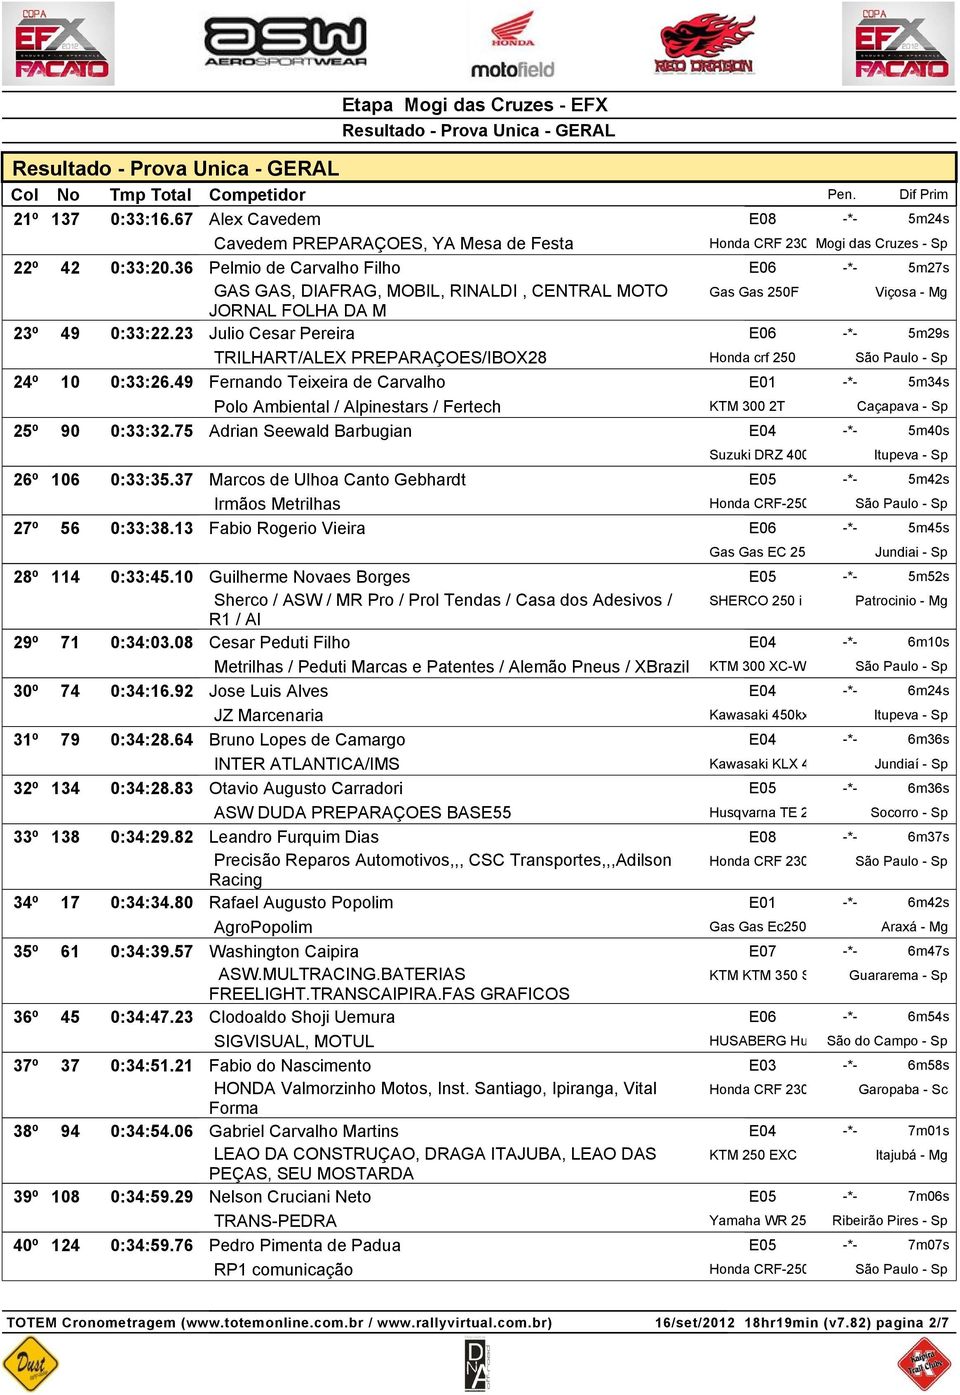 23 Julio Cesar Pereira E06 -*- 5m29s TRILHART/ALEX PREPARAÇOES/IBOX28 Honda crf 250 24º 10 0:33:26.